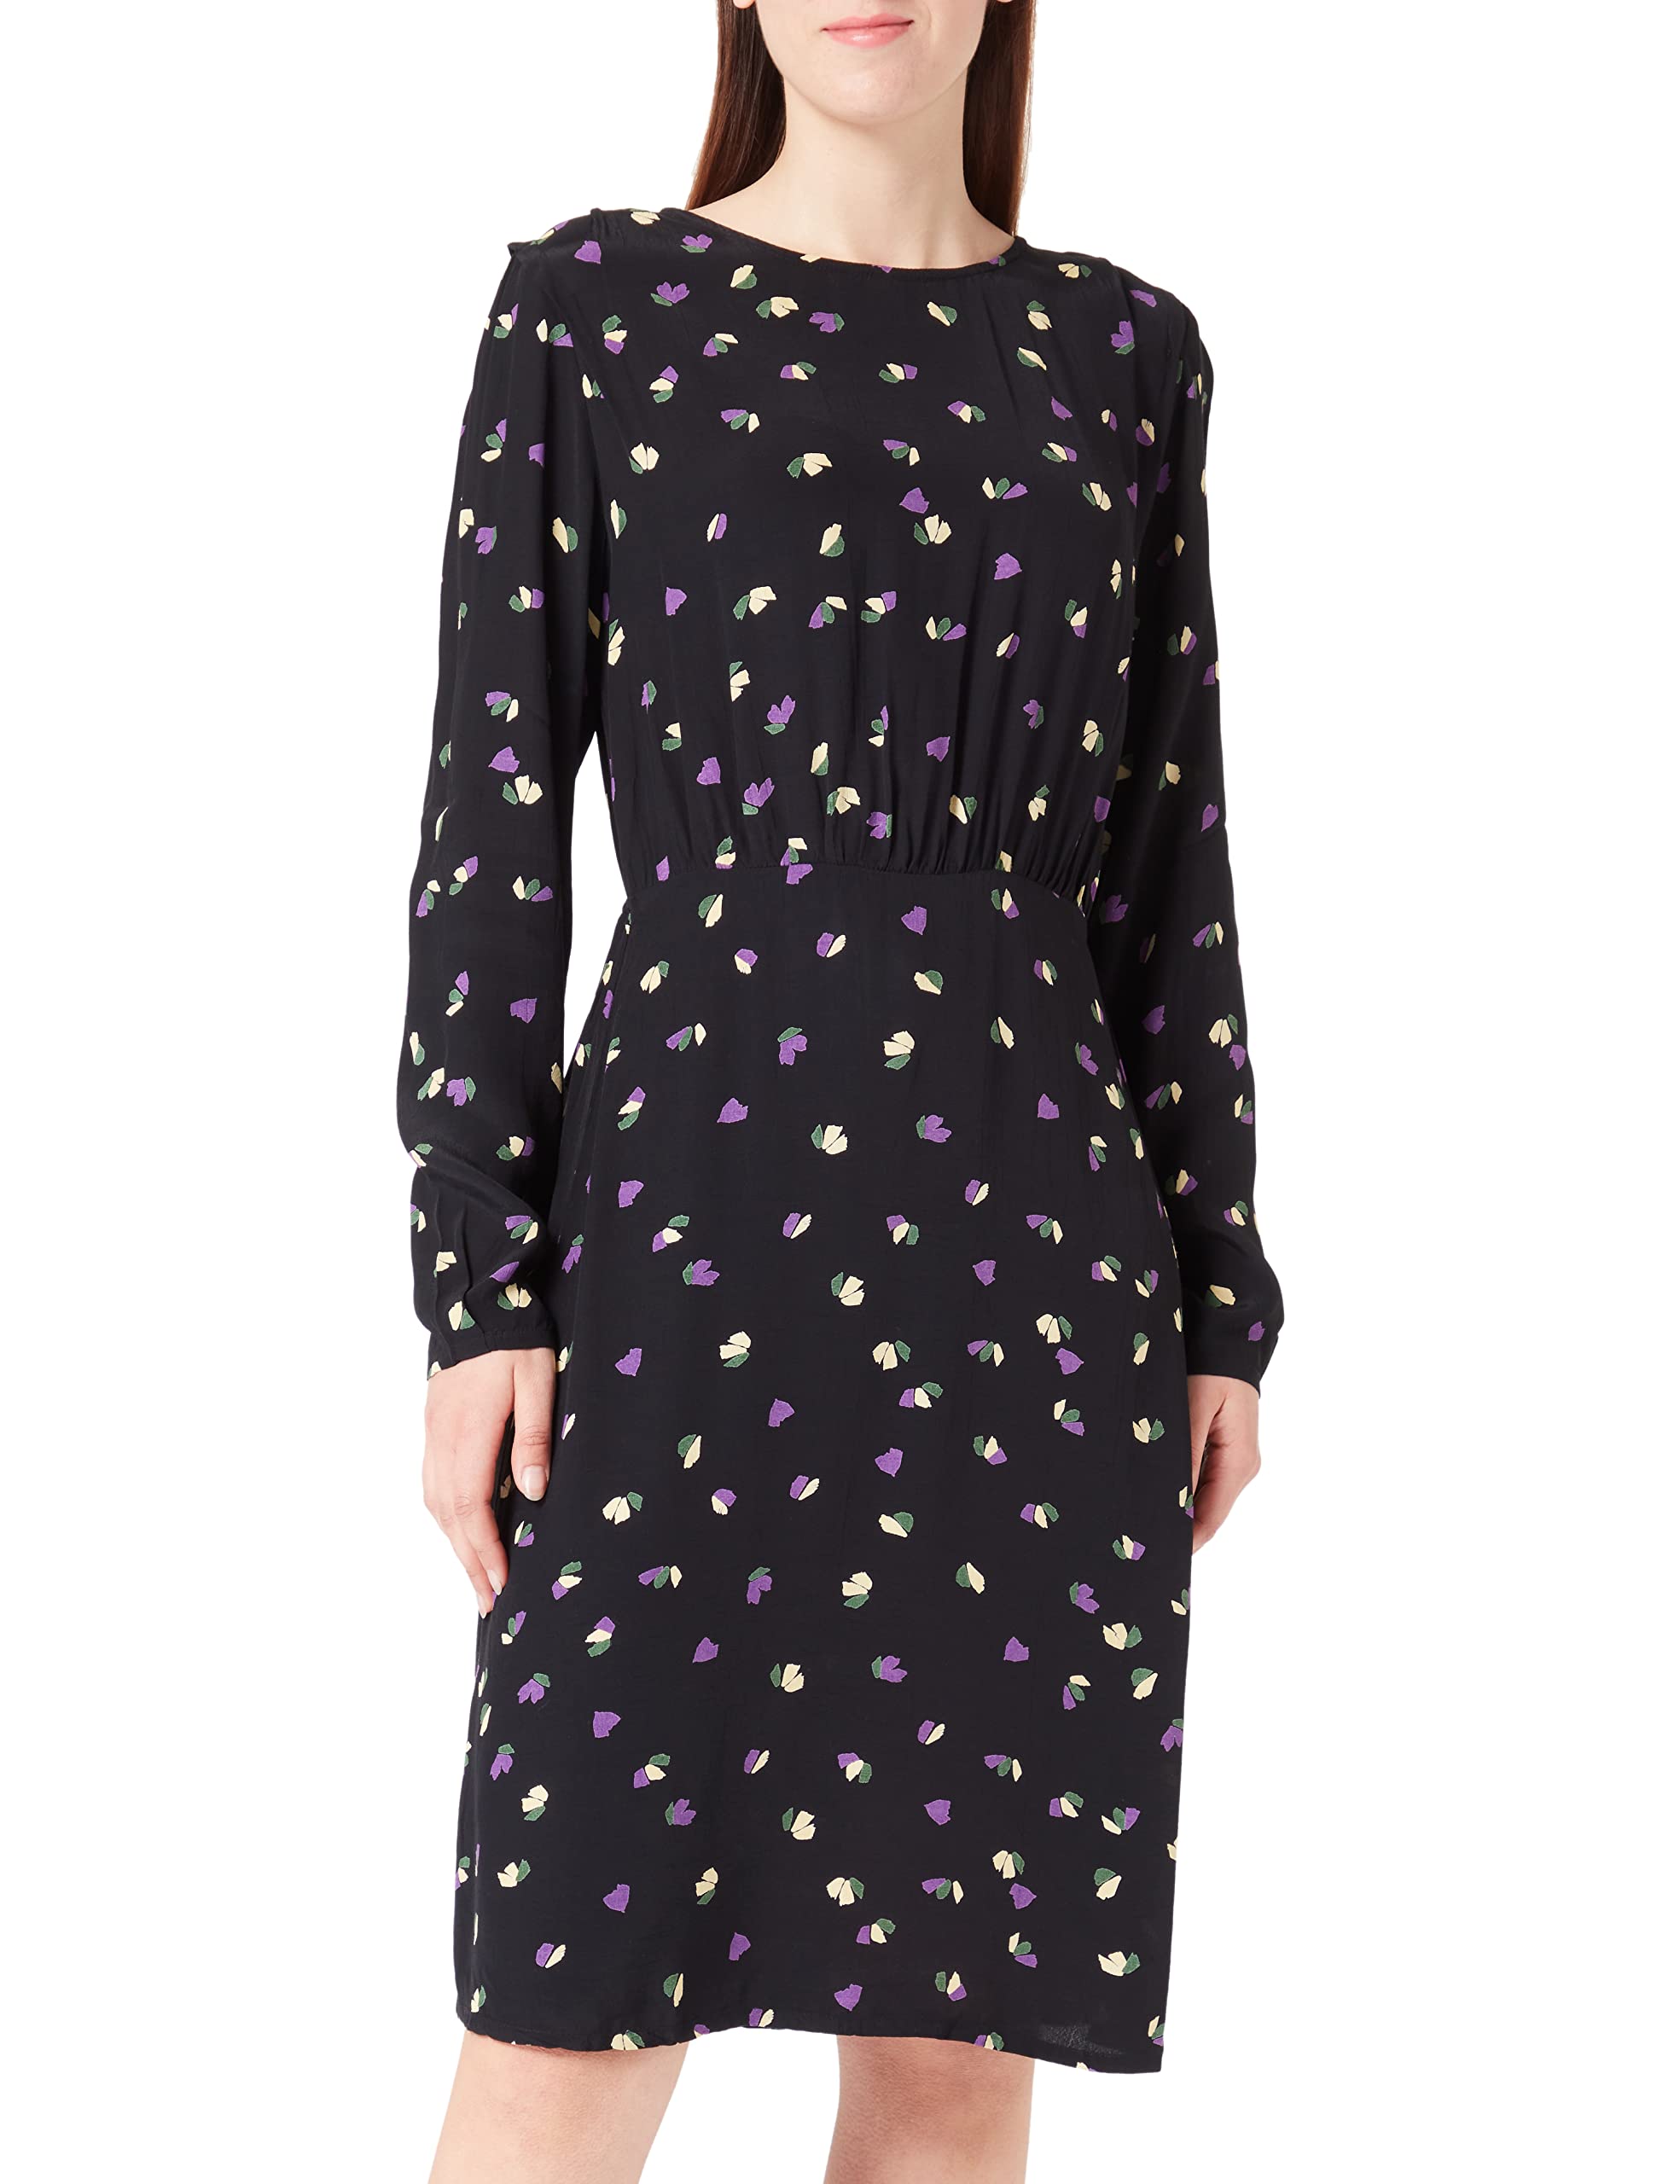 ICHI IHELIMA DR2 Damen Freizeitkleid Kleid 100% Viskose (Ecovero) Langarm hoch geschlossener Ausschnitt tailliert Midilänge, Größe:36, Farbe:Black Flower 1 (201750)